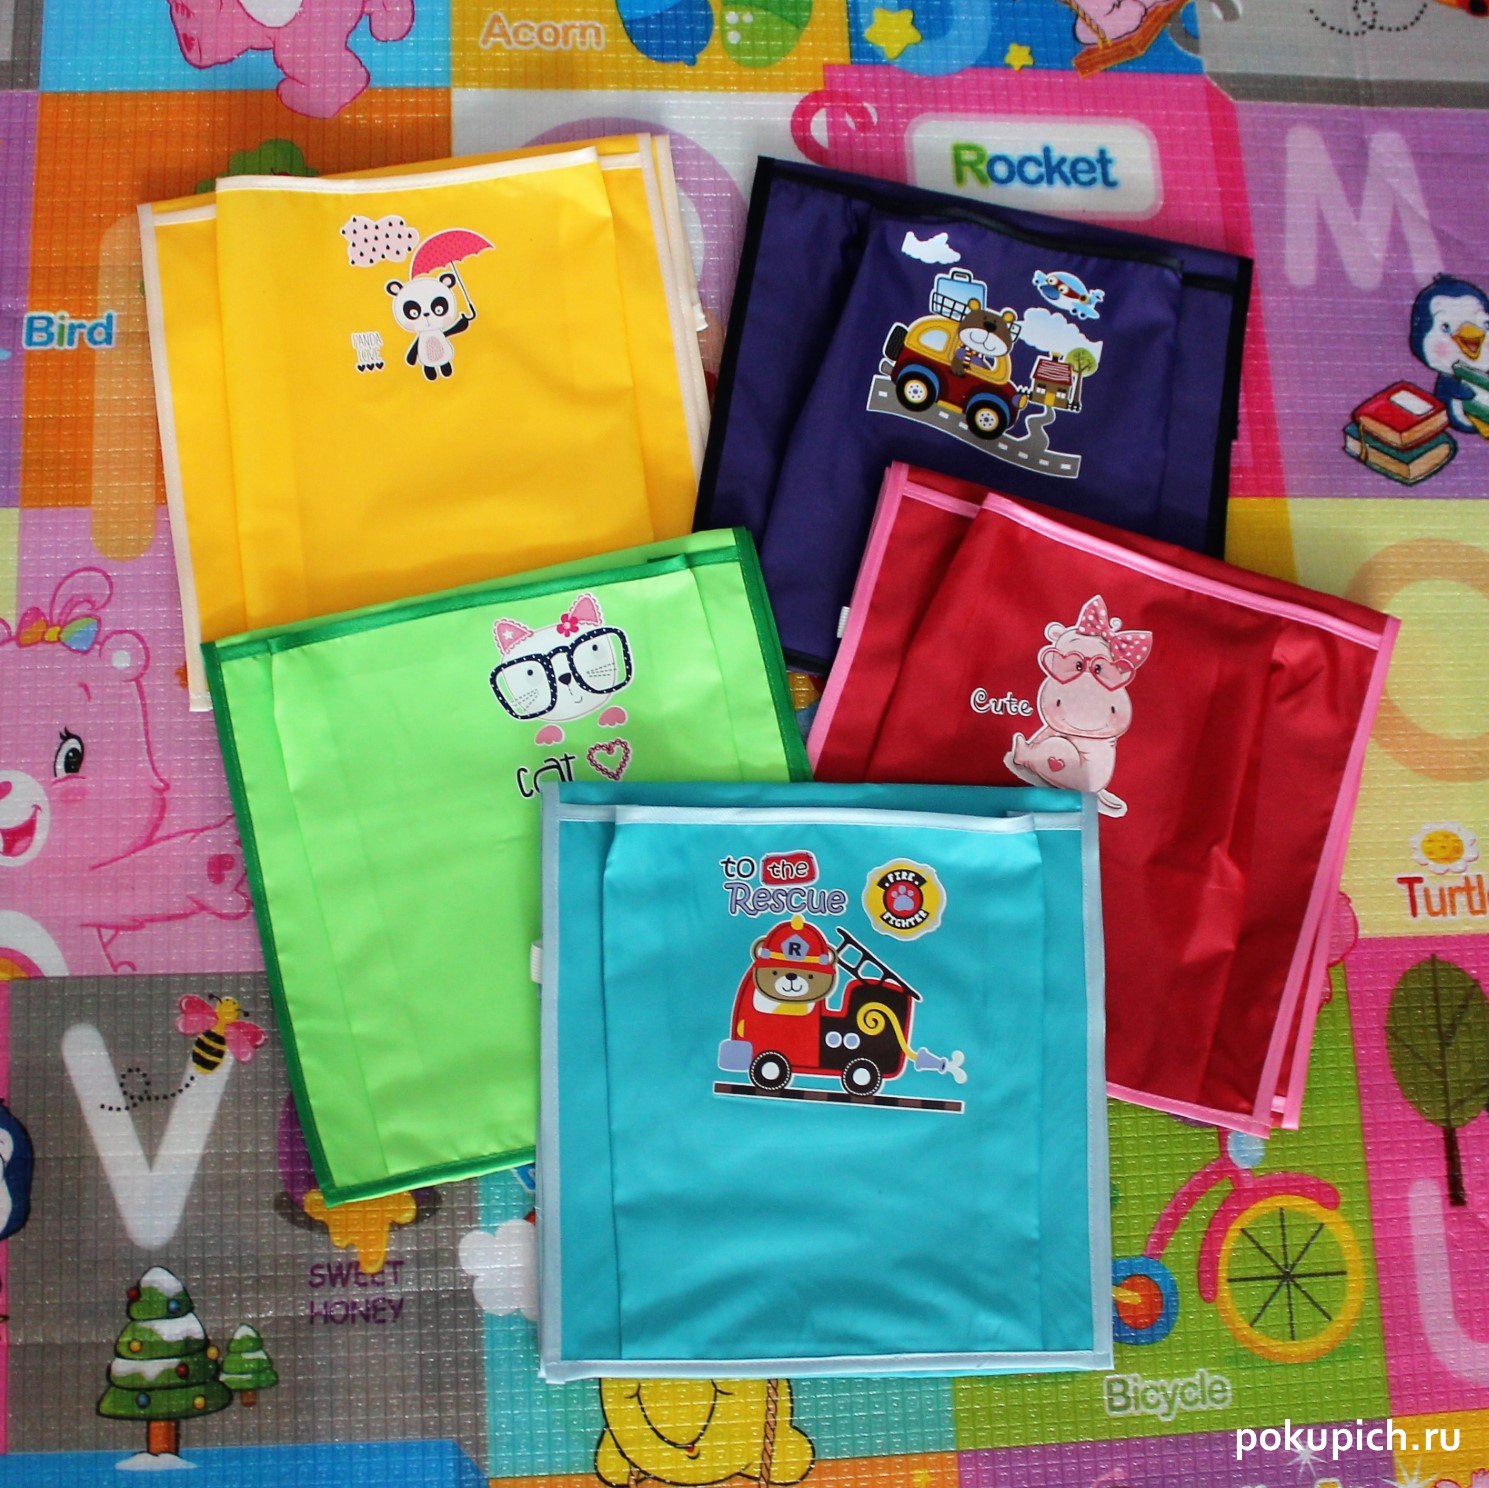 Ваш карман кармашки на шкафчик: Кармашки на шкафчик для детского сада с индивидуальным оформлением